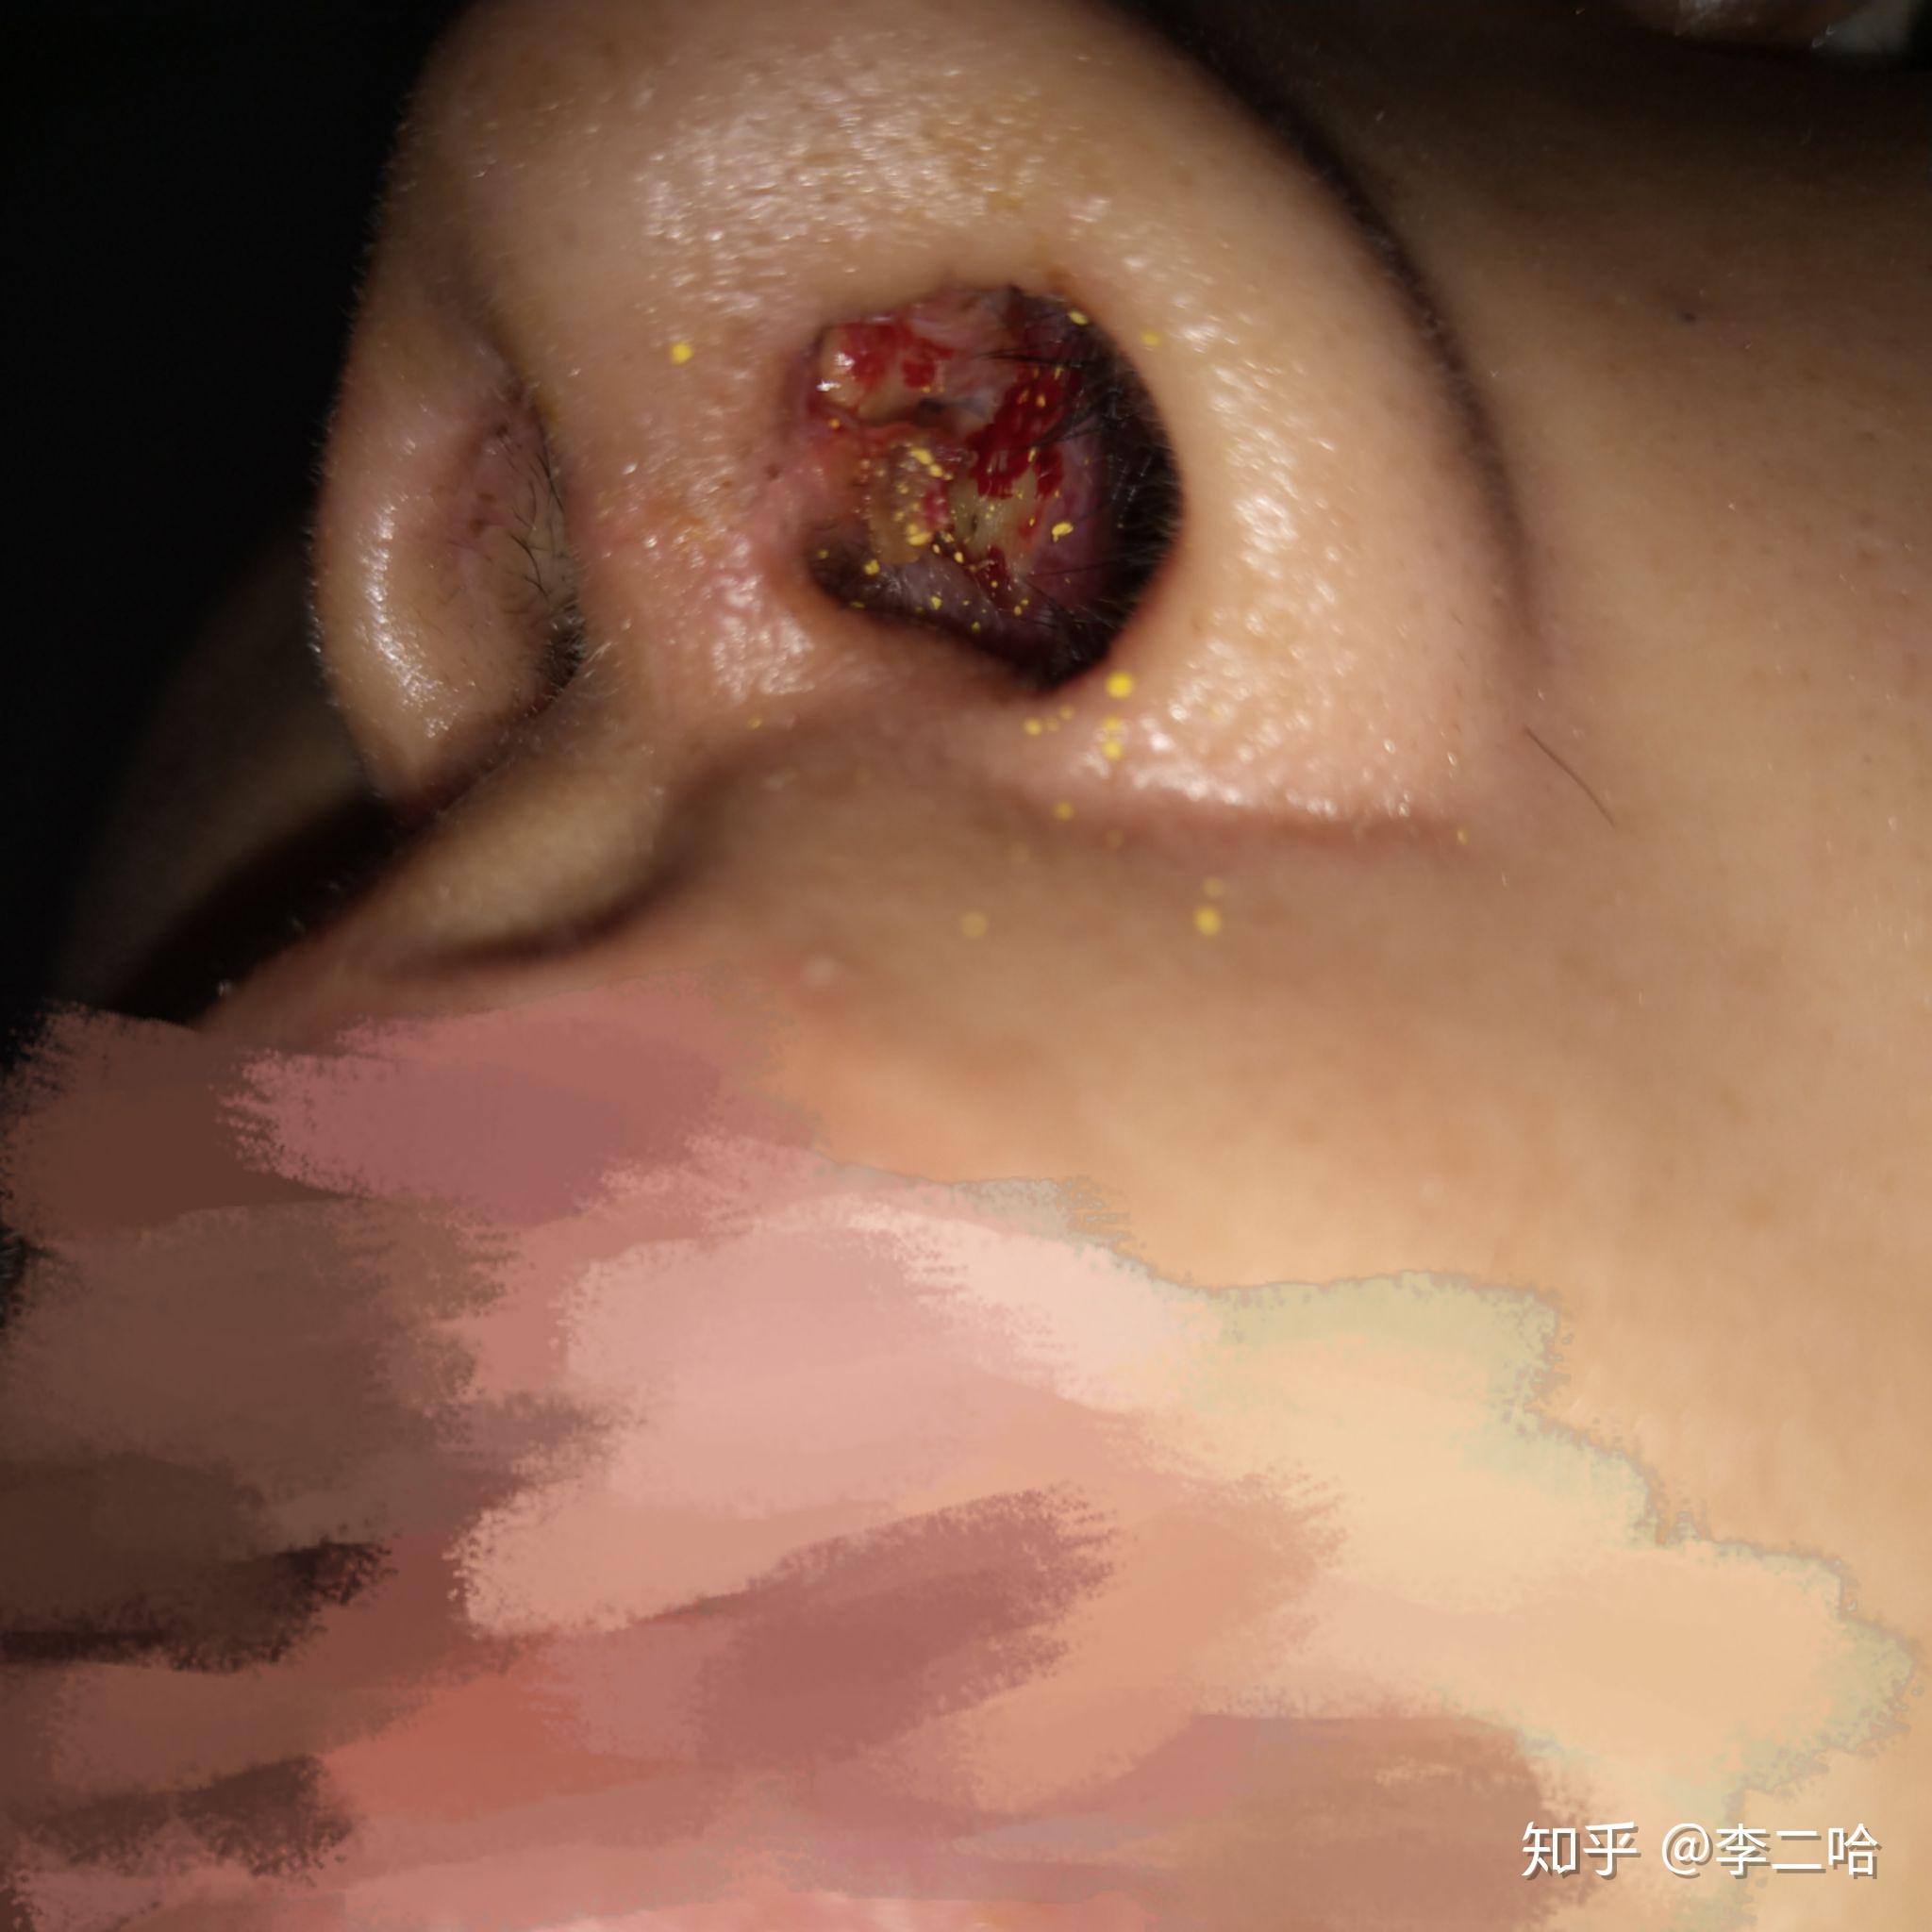 在上海某家整形医院进行隆鼻手术导致鼻子里面溃烂